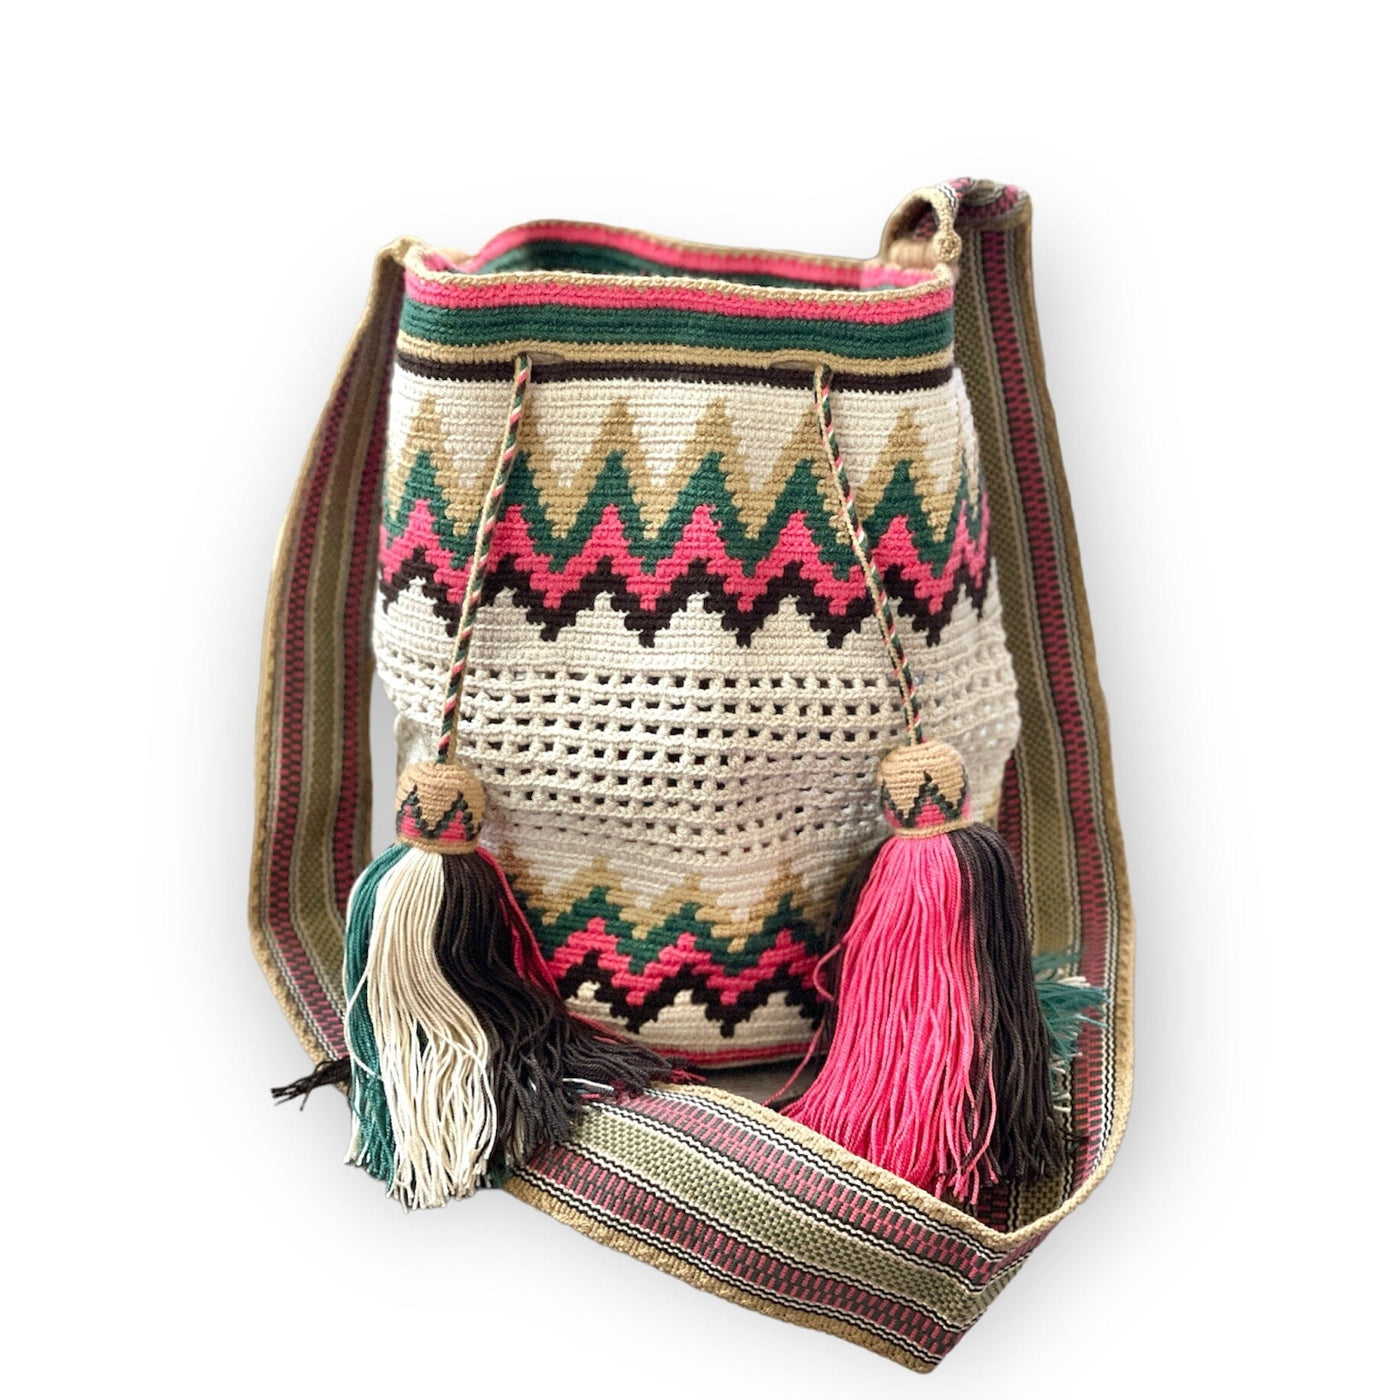 Off-White Earth Tones Crochet Mesh Bags | Crossbody Boho Handbags | Bohemian purse | Colorful 4u